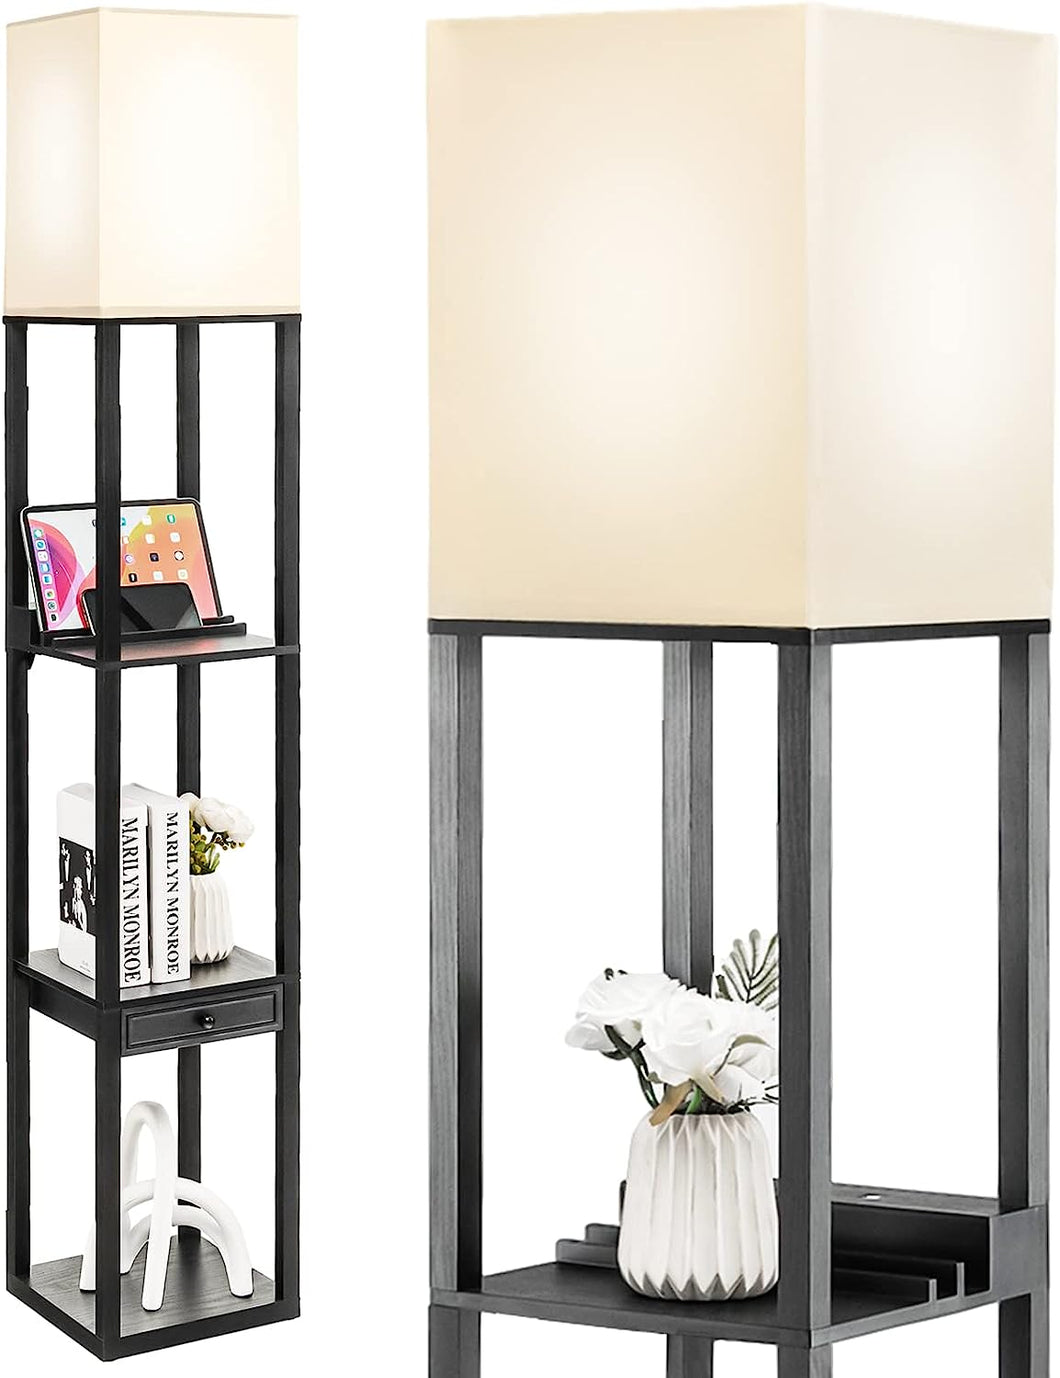 Modern Shelf Floor Lamp, Dimmable Standing Lamp Shelf W/ 1 Drawer & 1 USB Port, E27 5000K LED Bulb Included, Pull Chain Switch, 3-Level Brightness, Storage Lamp for Bedroom, Living Room